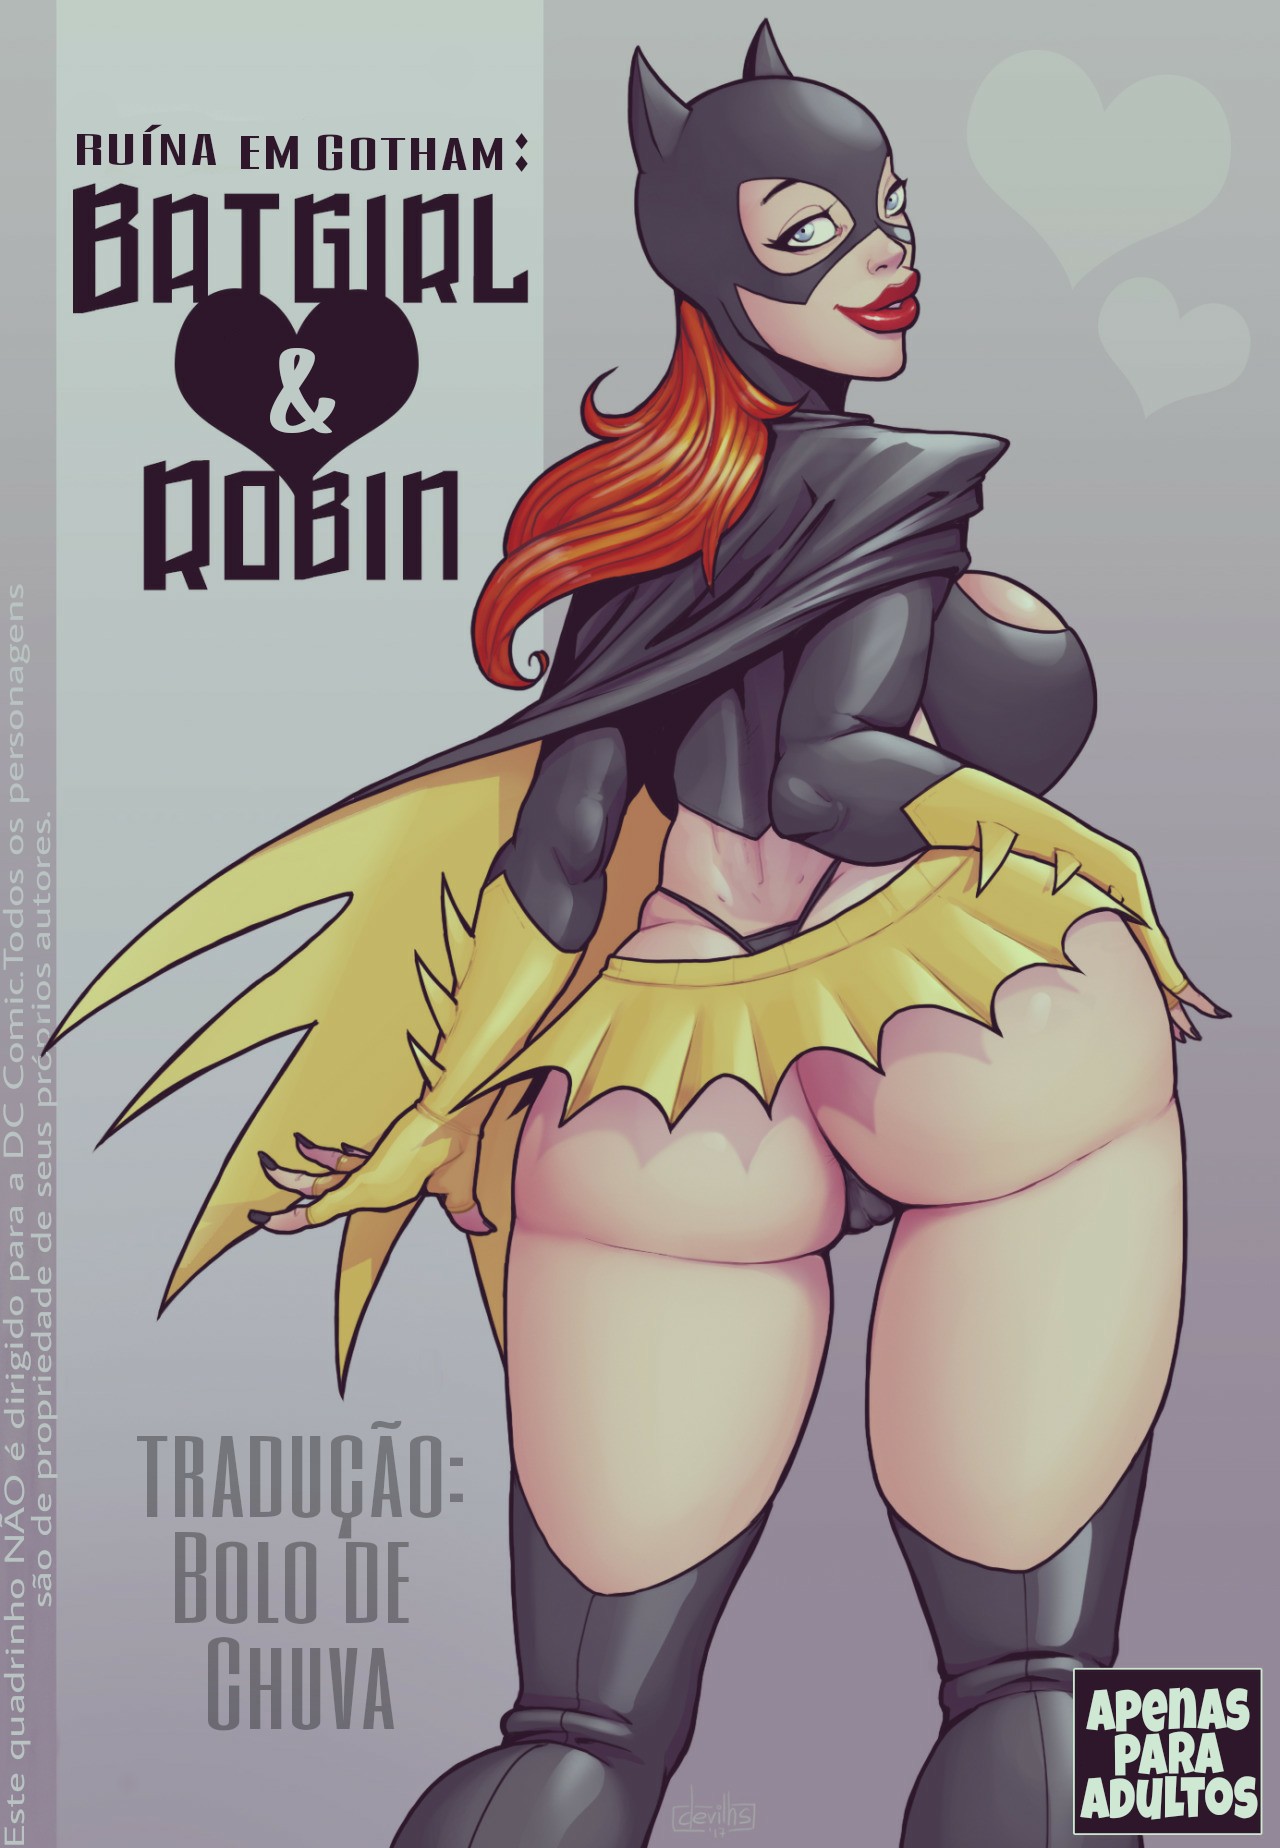 Ruína em Gotham – Batgirl & Robin [DevilHS]